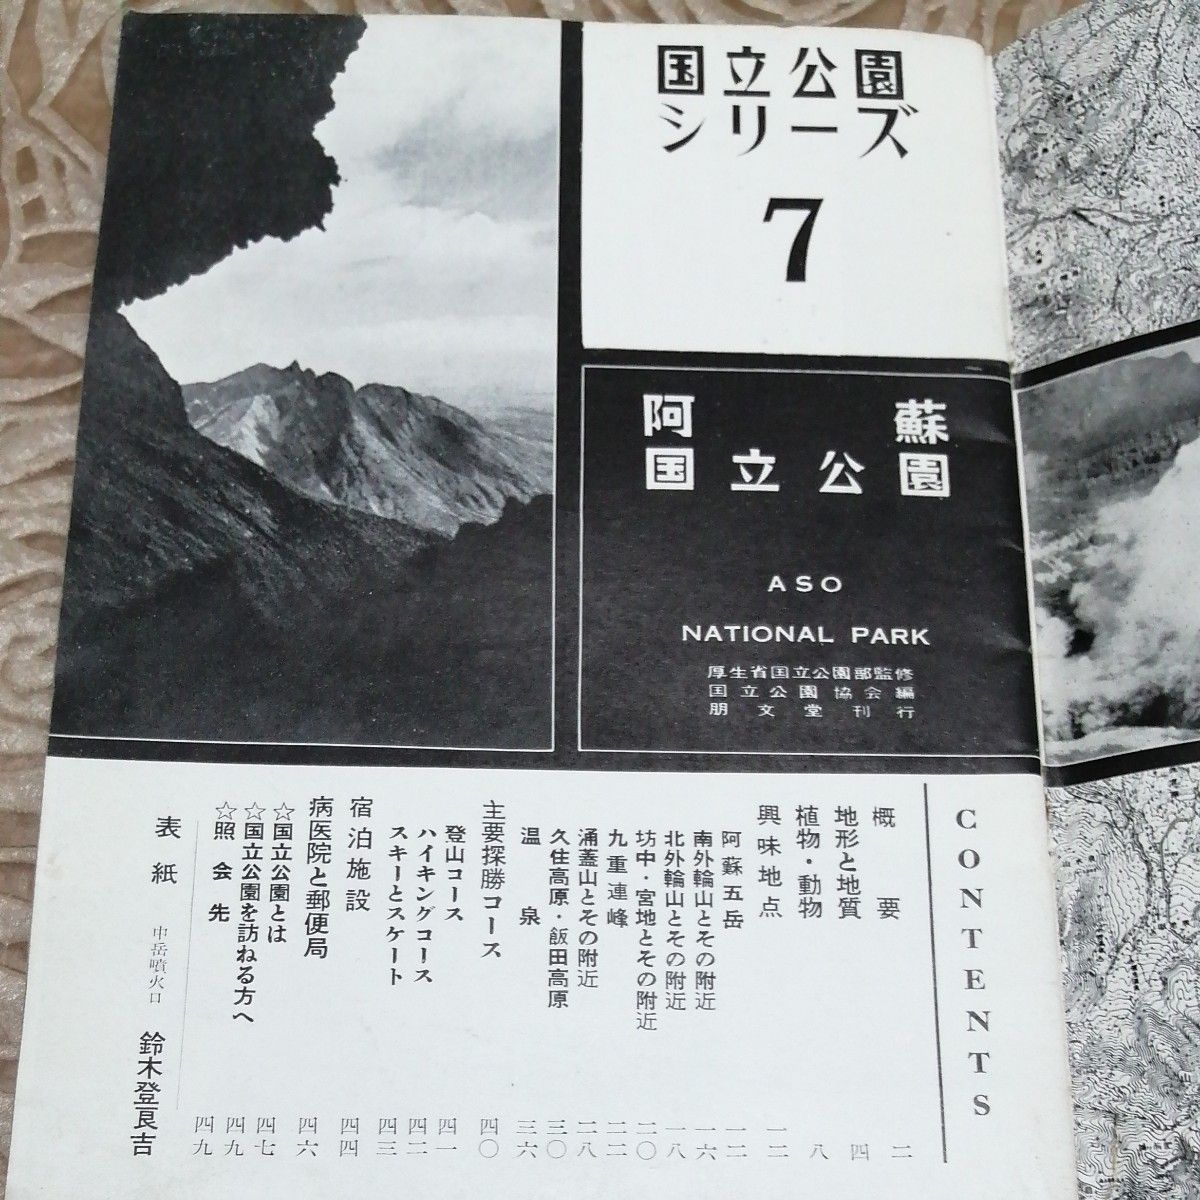 阿蘇 国立公園シリーズ 7 昭和二十七年十月十五日発行 著作者厚生省  国立公園協会